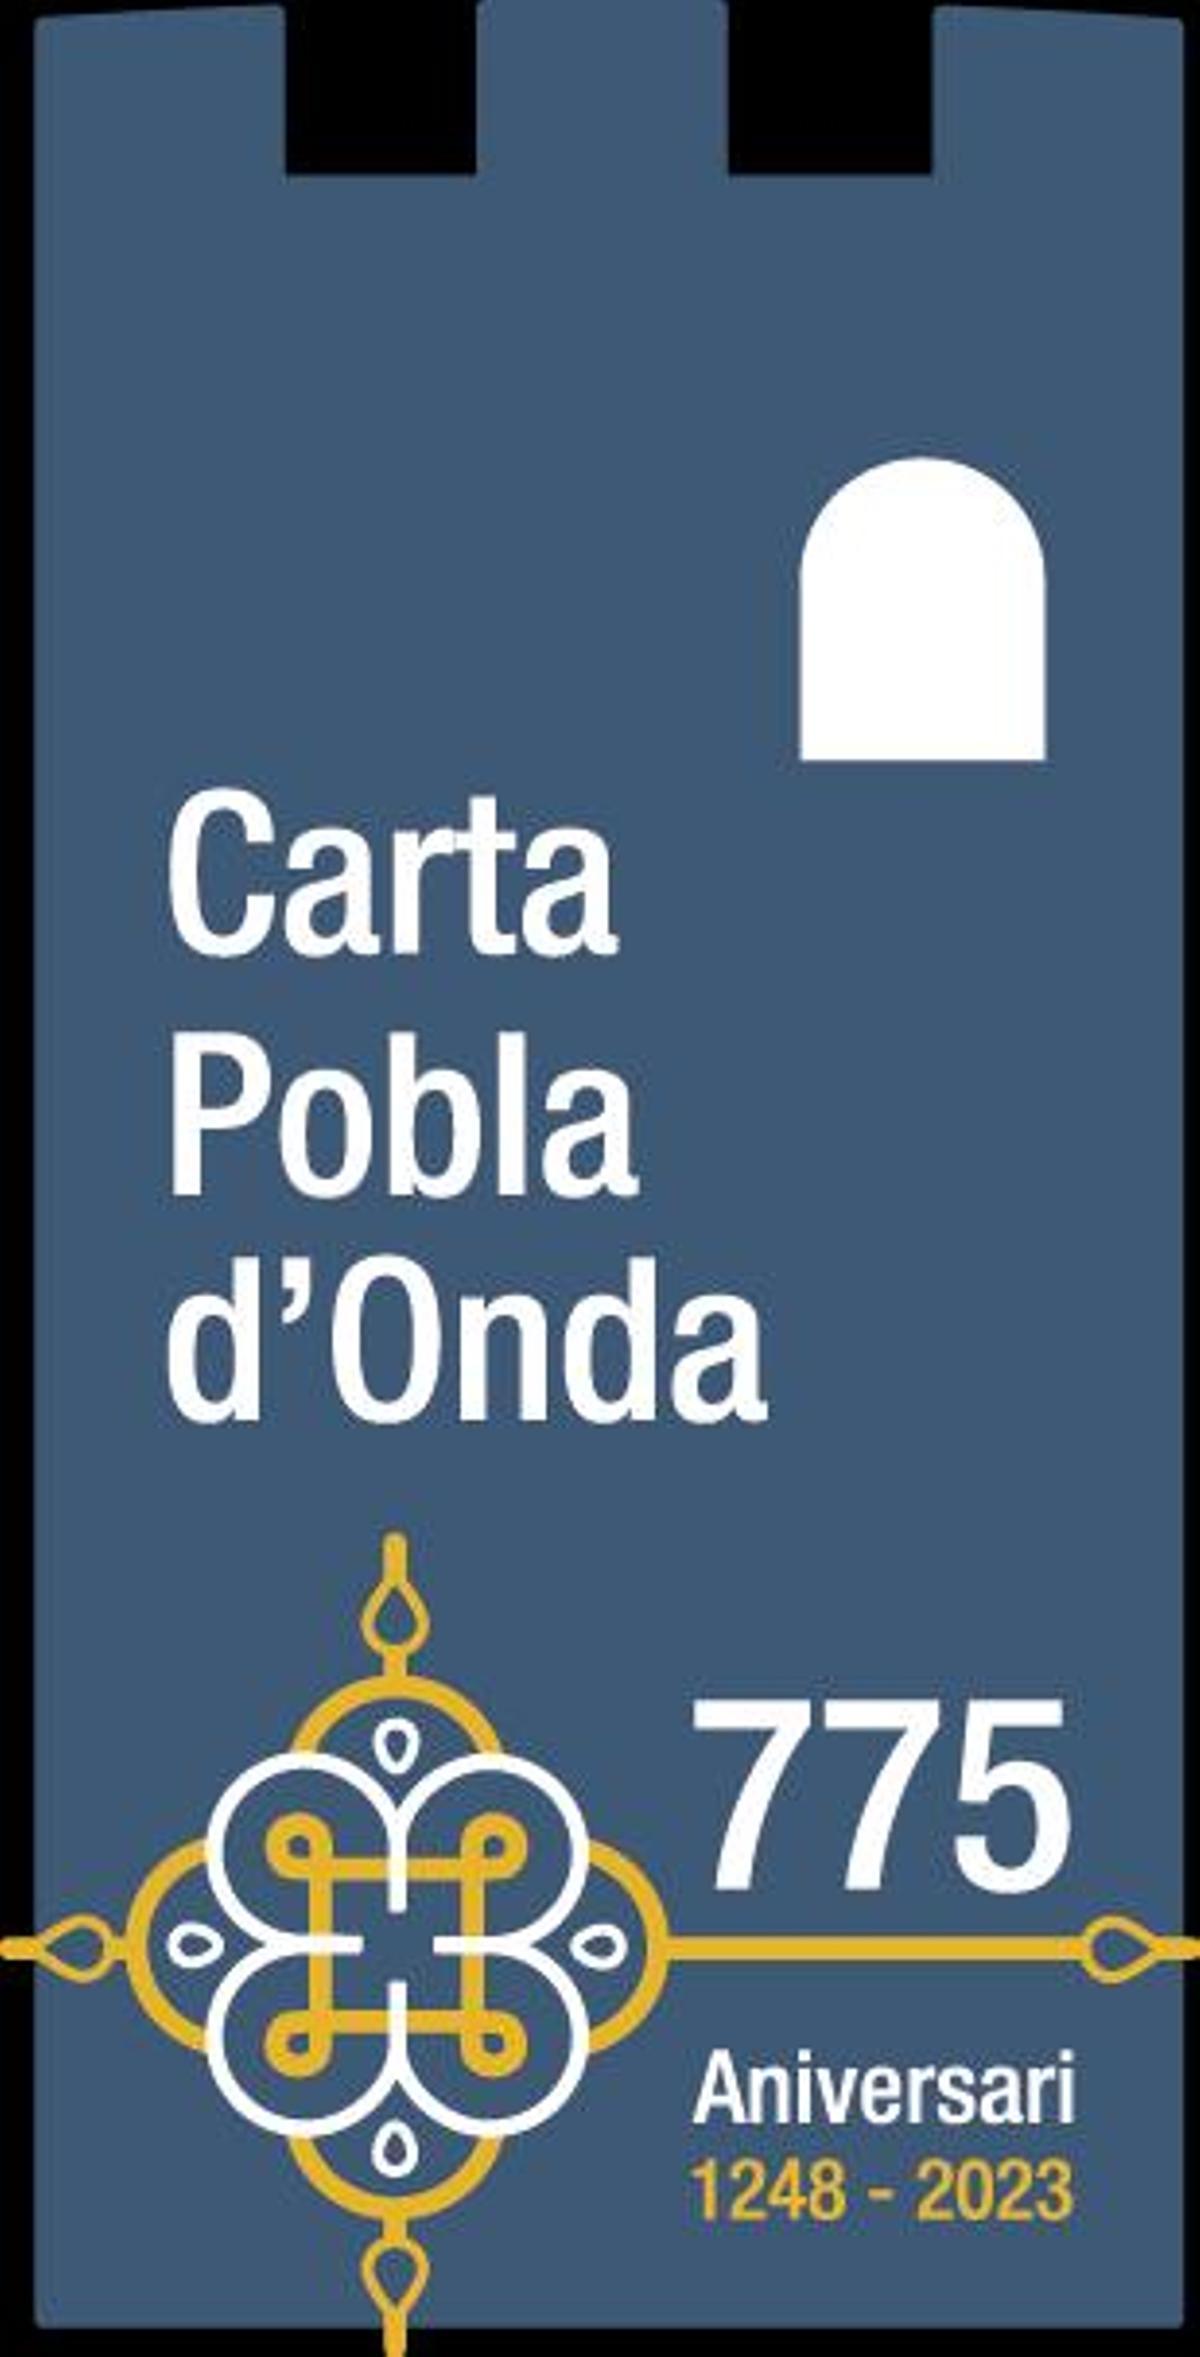 Logotipo conmemorativo para el 775 aniversario de la Carta Pobla de Onda.